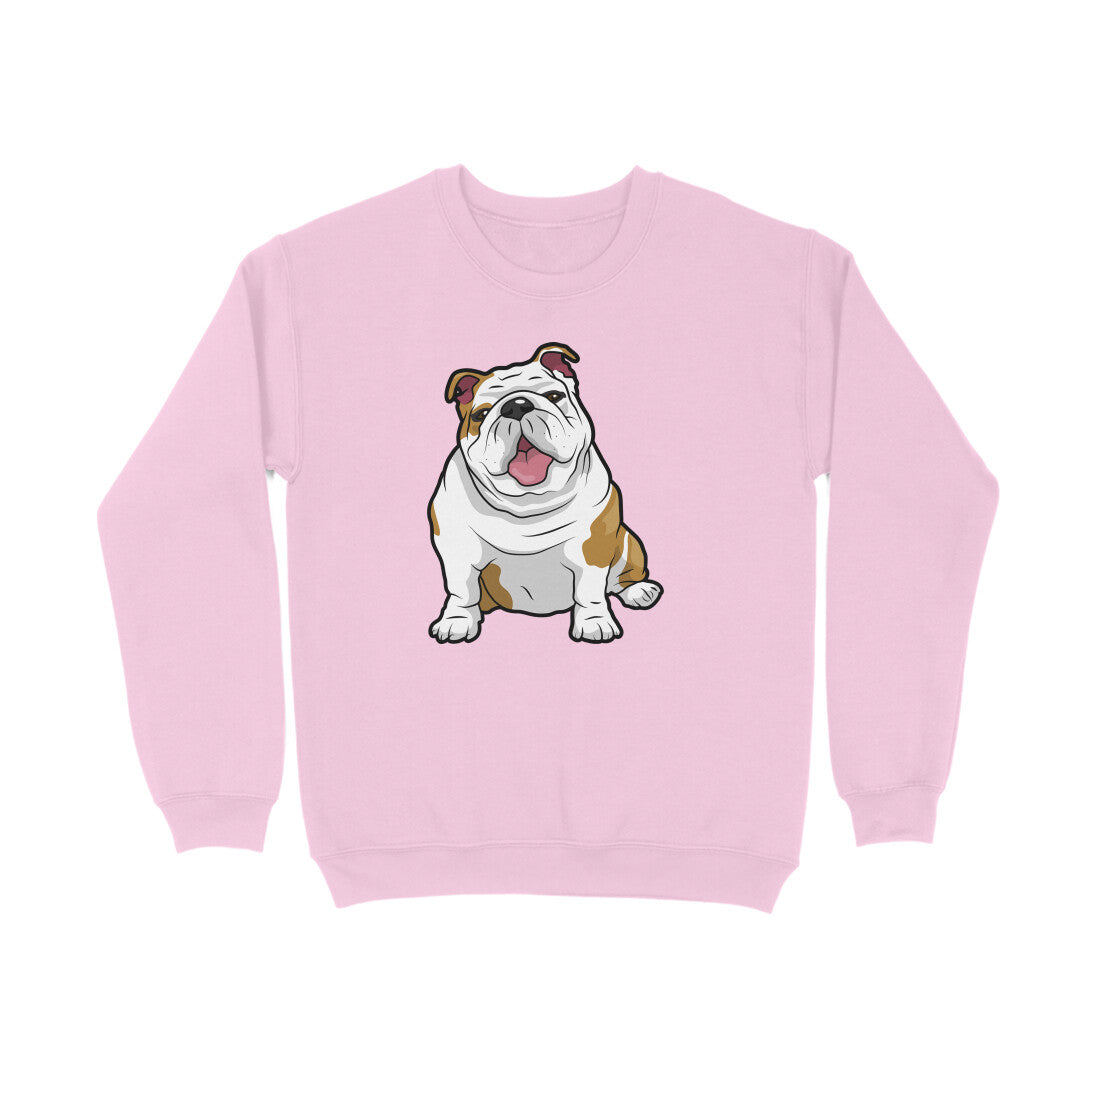 Stepevoli Clothing - Sweatshirt (Unisex) - Wringkly Sprinkly Bulldog (8 Colours)